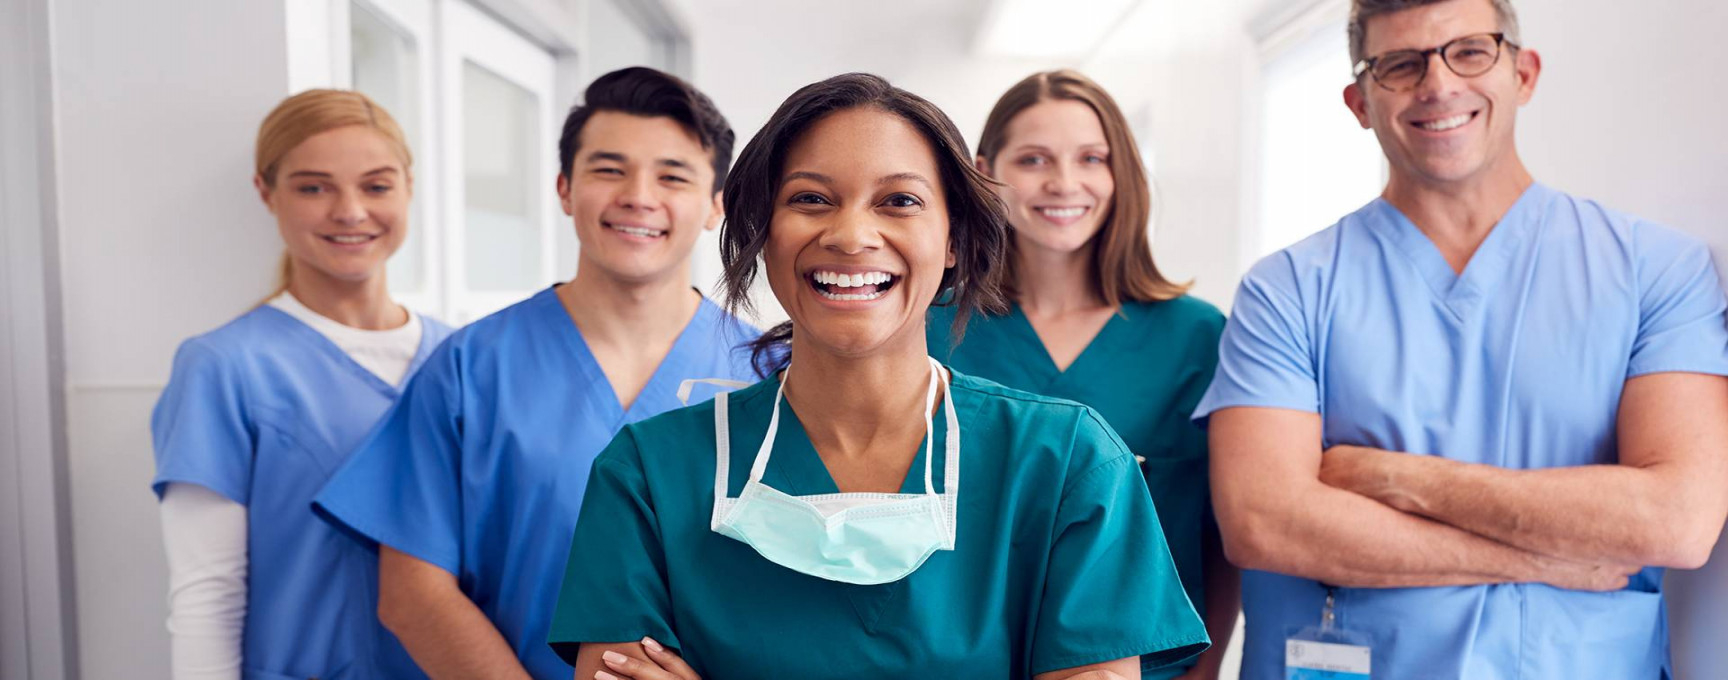 Travel Nurse Jobs Miami - Explore Miami's Opportunities - Travel Nurse Jobs Available!